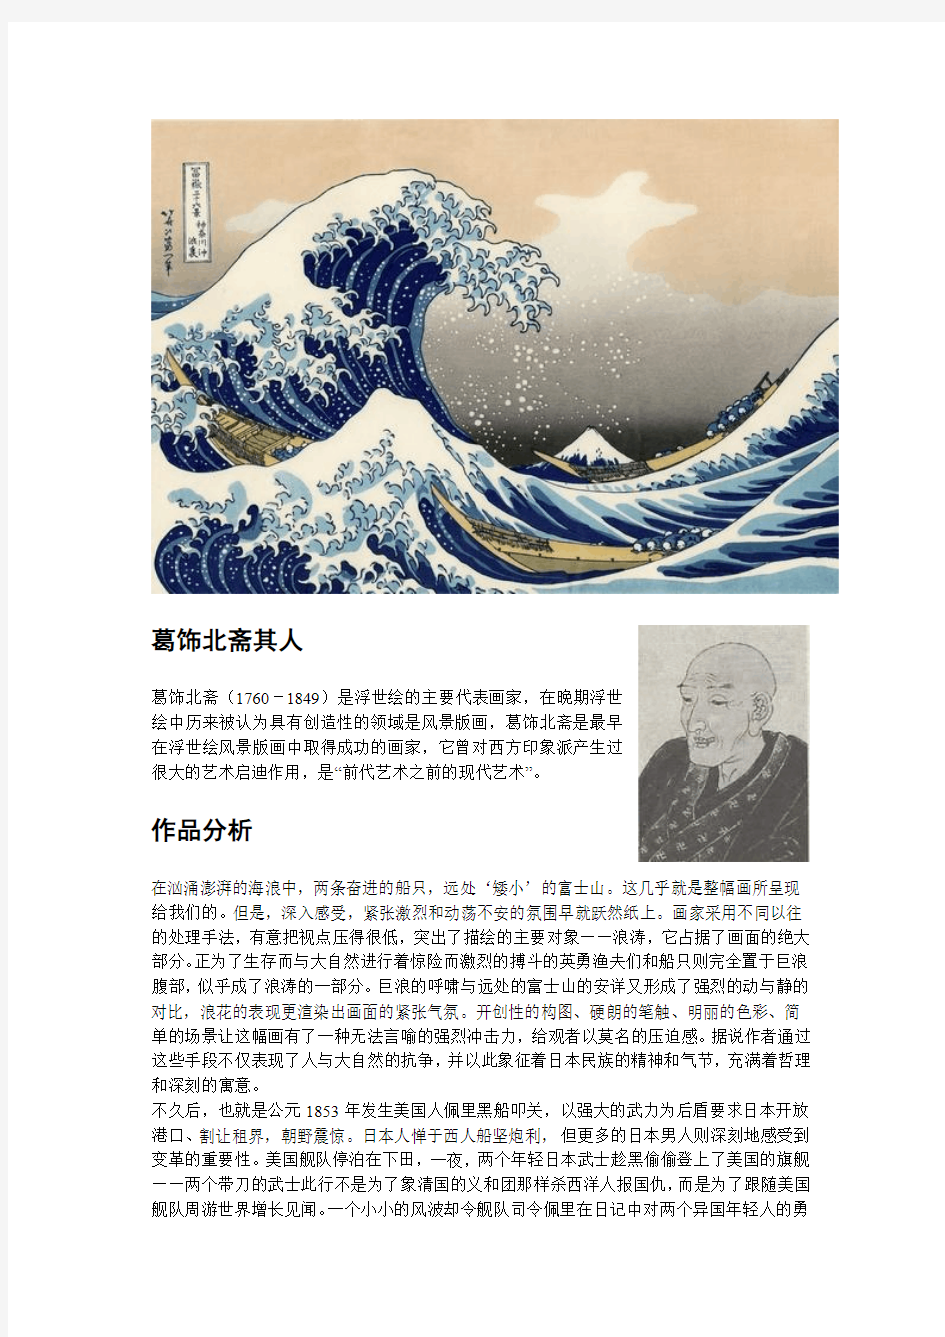 关于神奈川冲浪图、日本浮世绘及对其西方艺术的影响